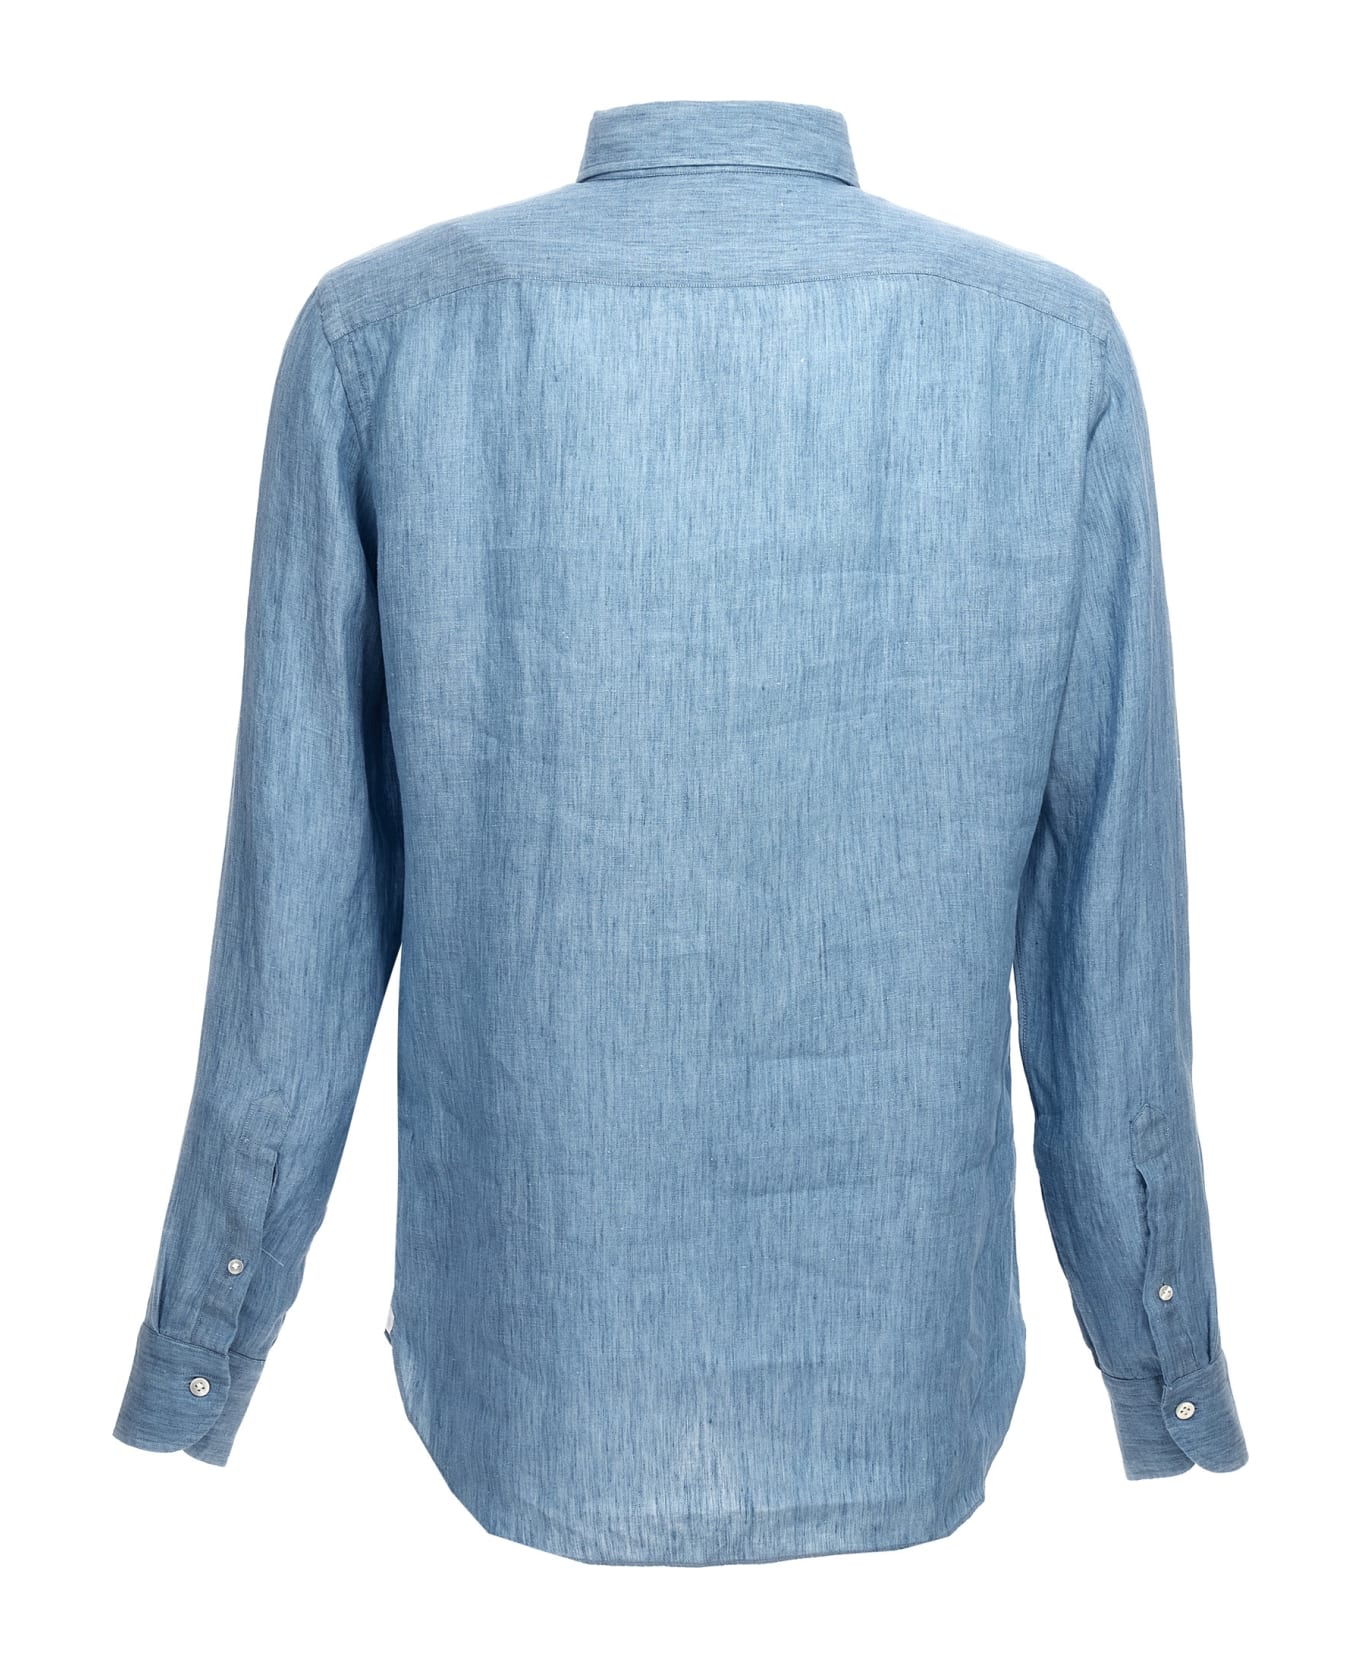 Borriello Napoli Linen Shirt - Light Blue シャツ